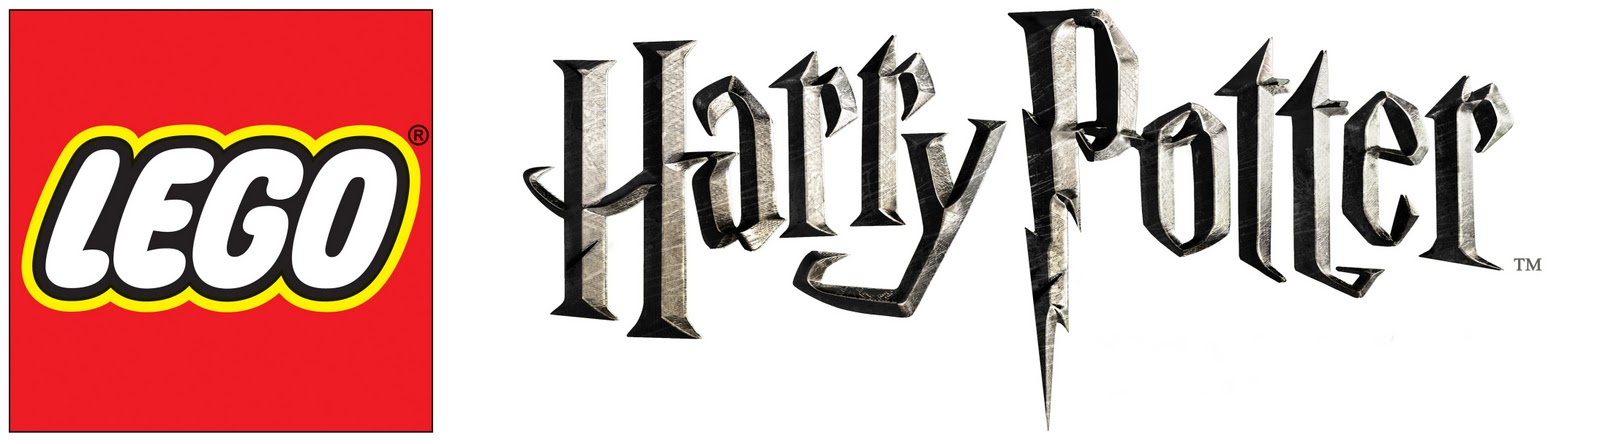 Image result for lego harry potter logo